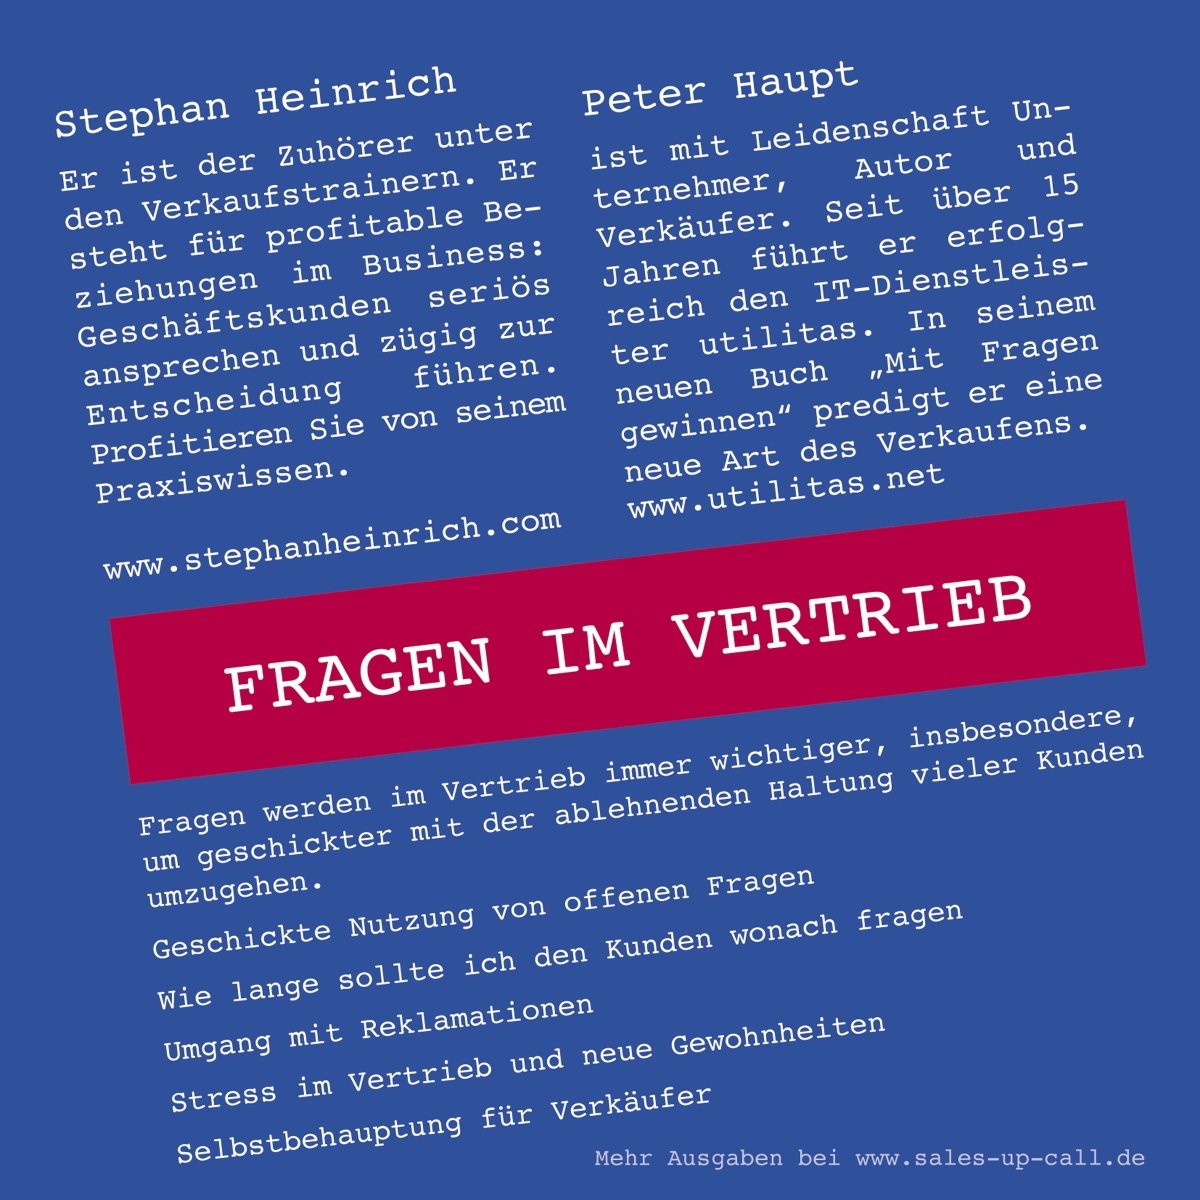 Fragen im Vertrieb - Sales-up-Call - Stephan Heinrich